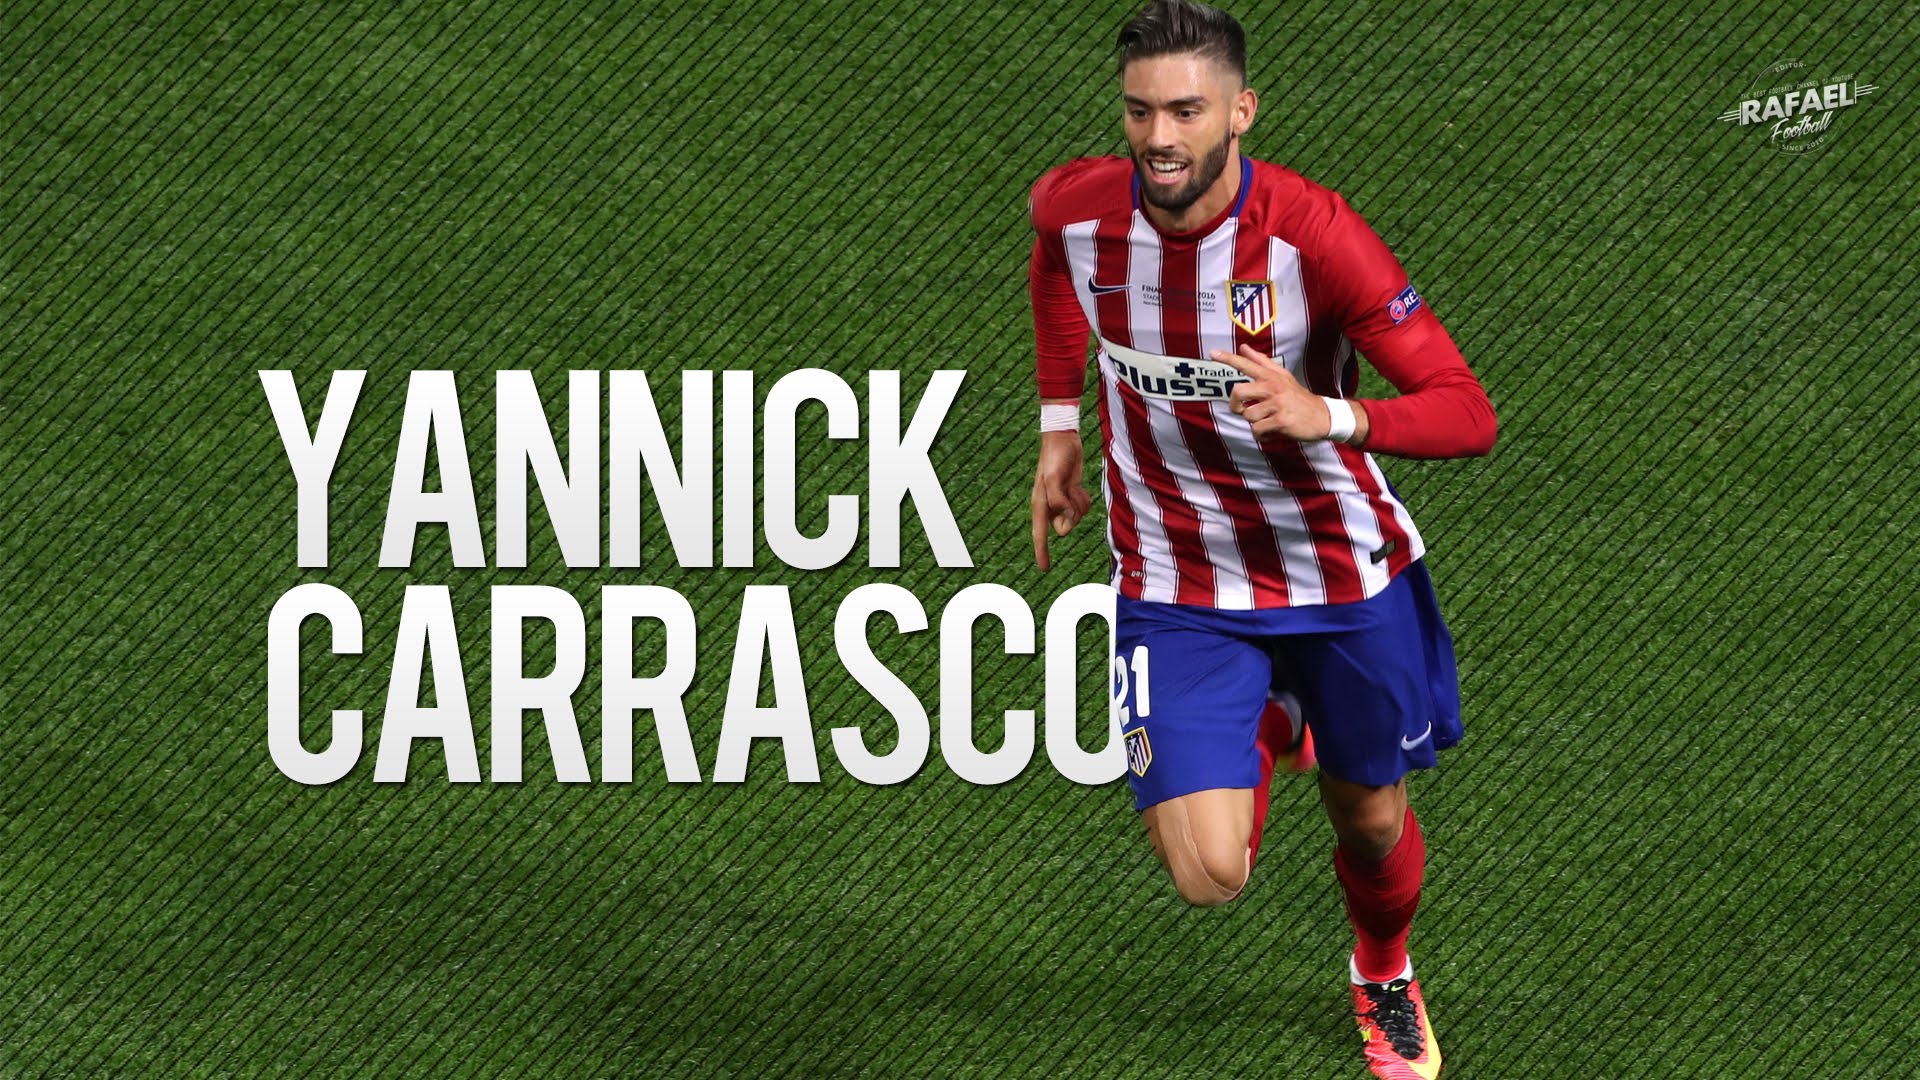 Yannick Ferreira Carrasco & Goals